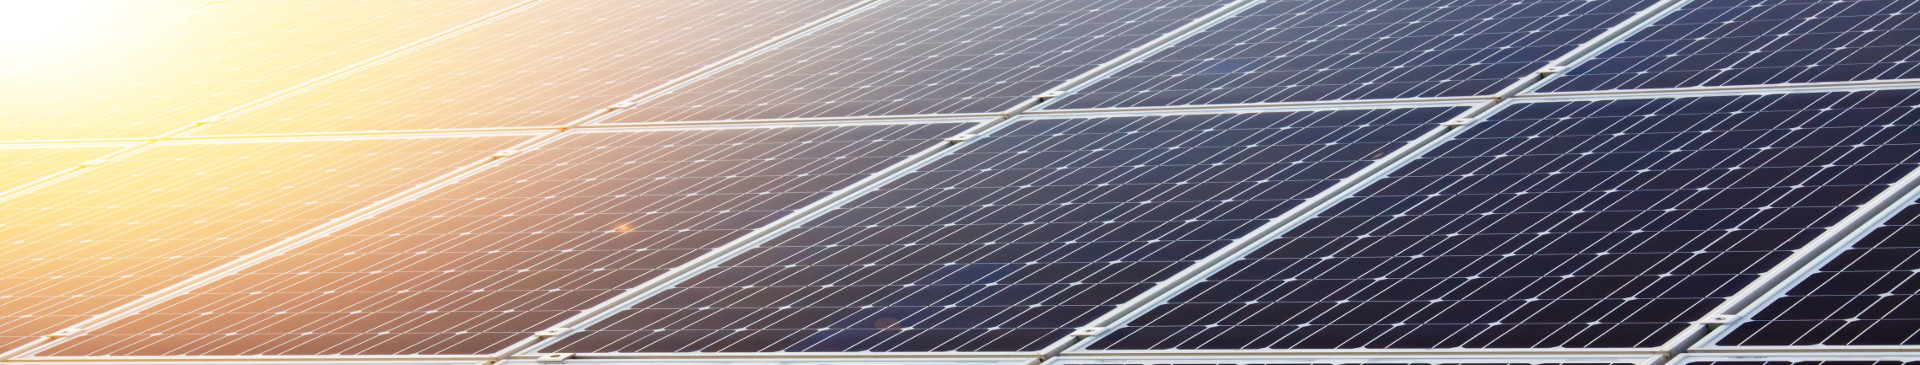 O Que é a Energia Fotovoltaica